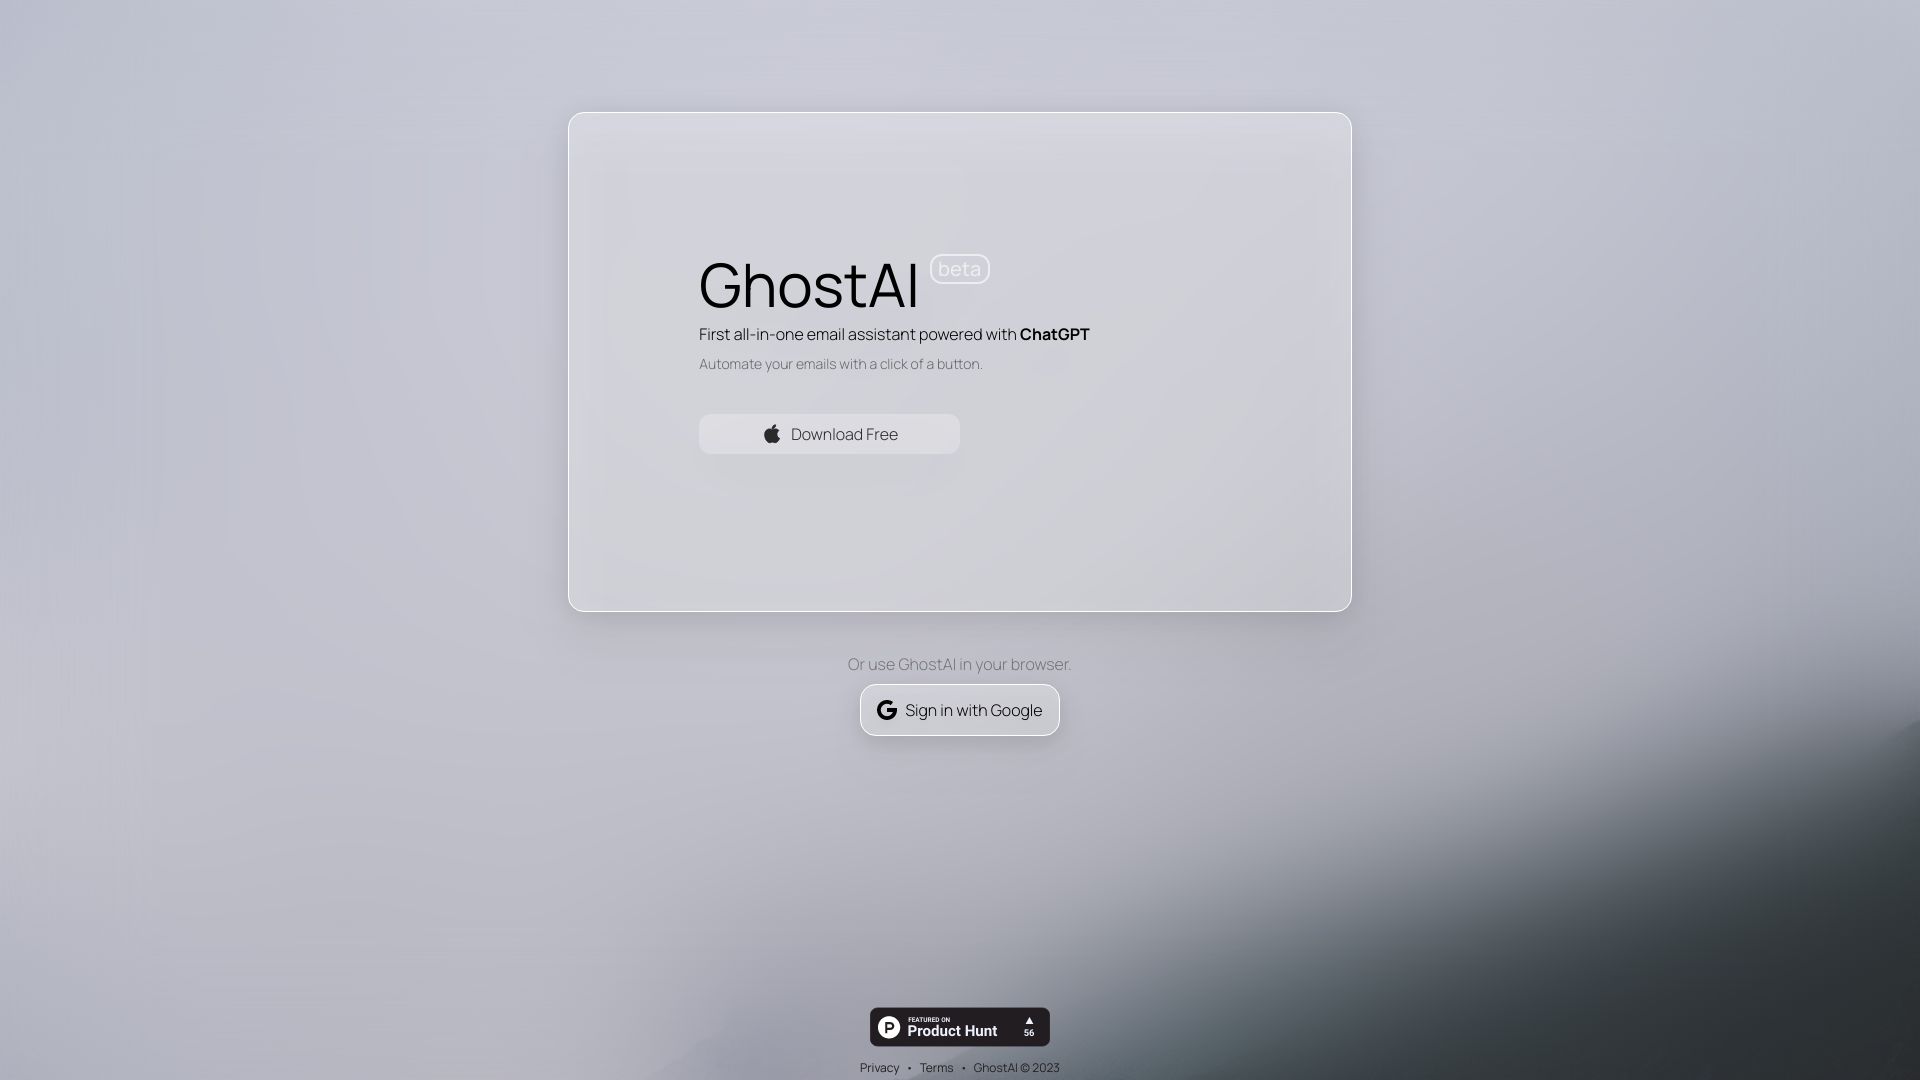 Ghost AI